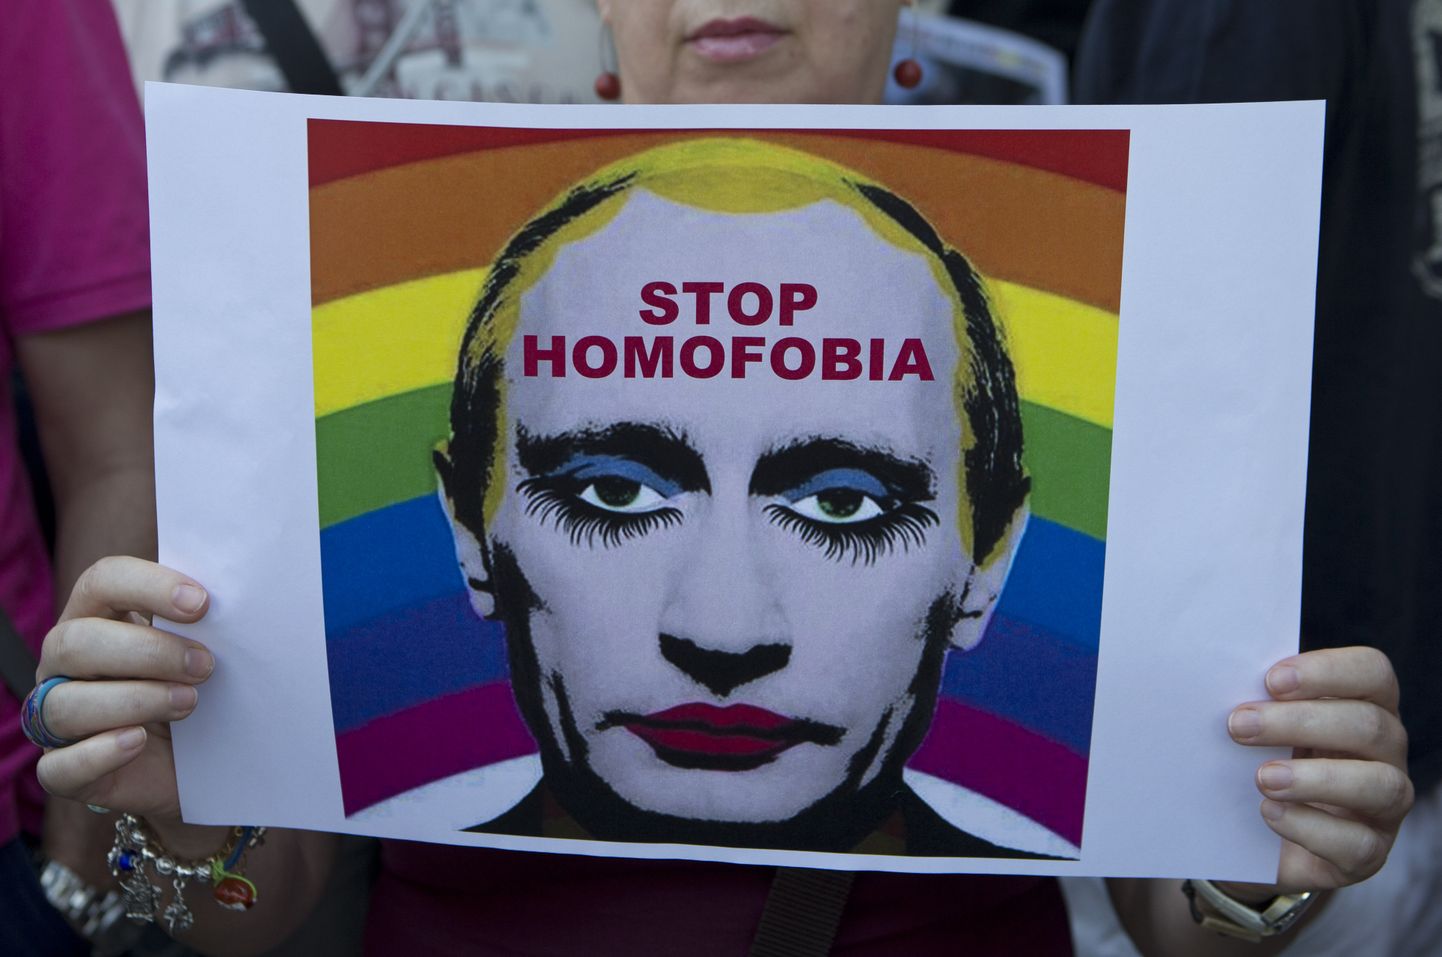 Надпись на плакате: "Остановите гомофобию".